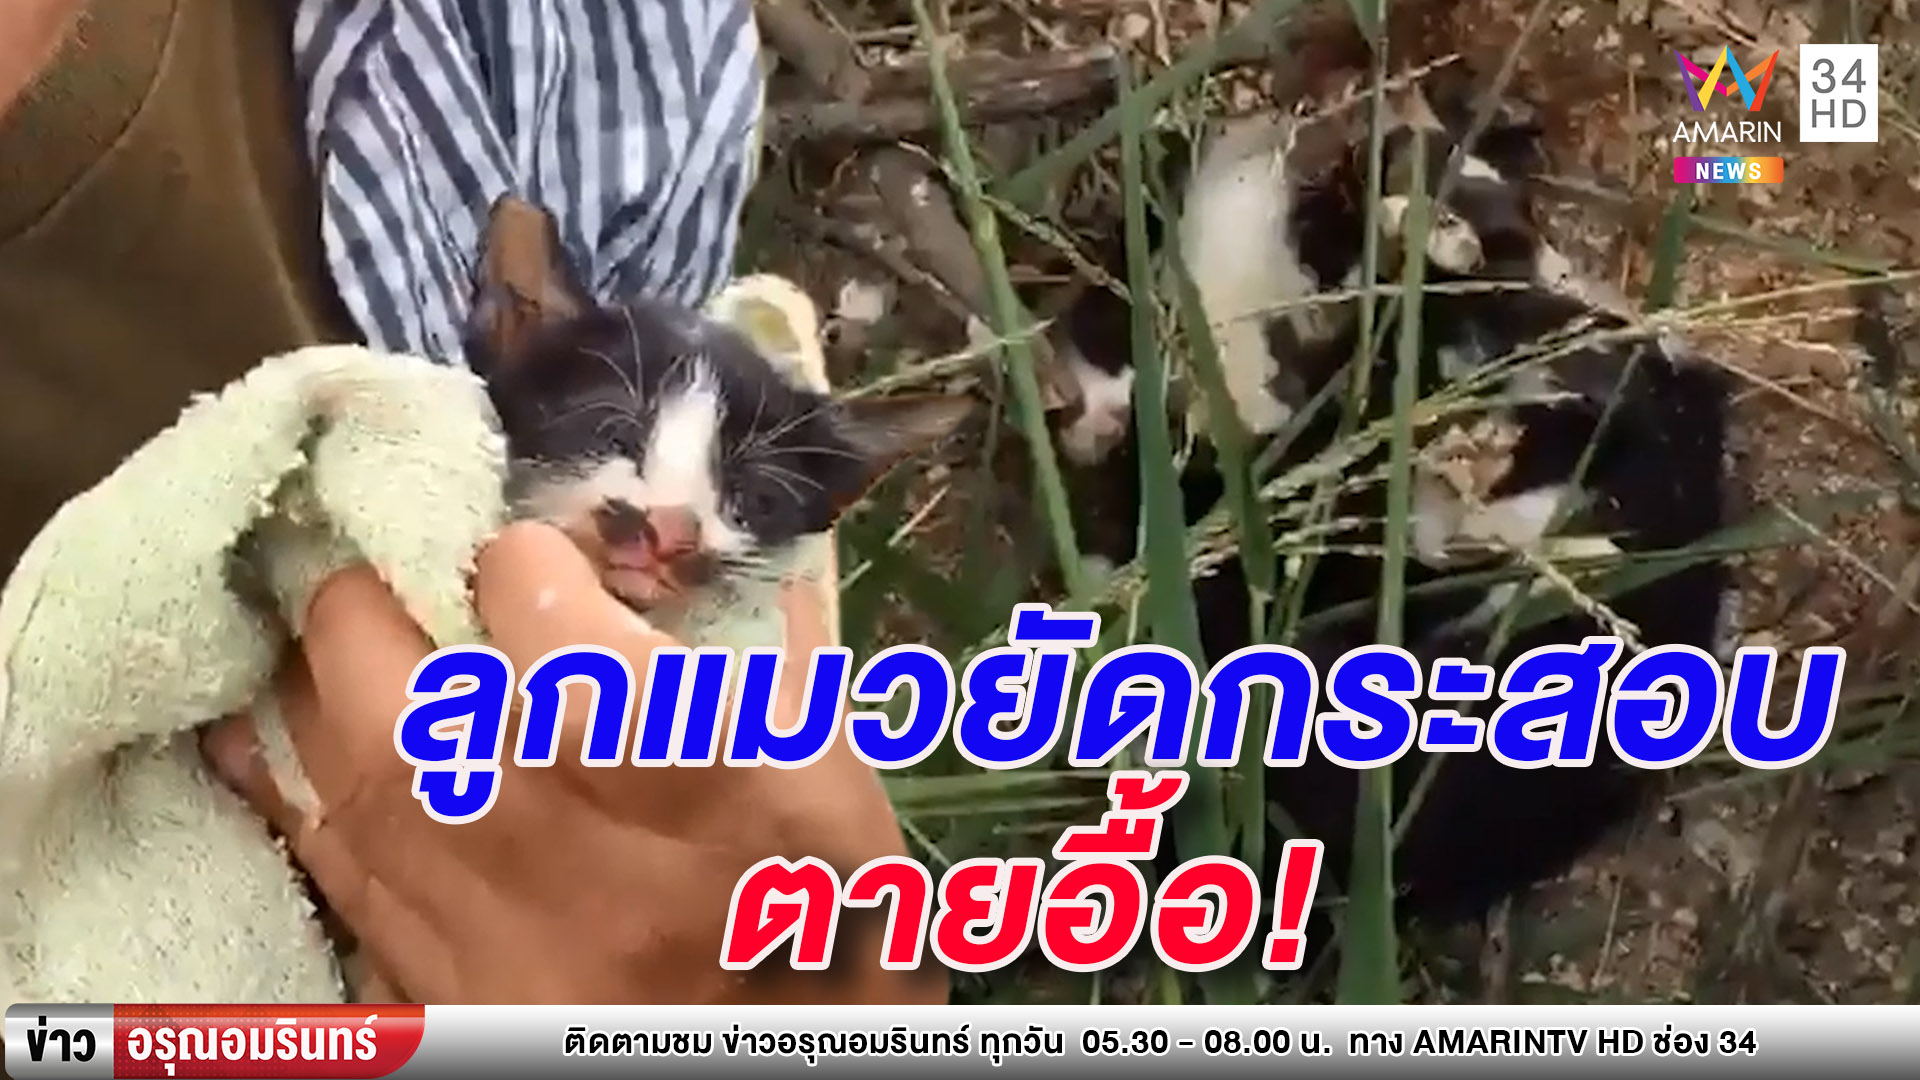 สลดใจ ลูกแมว 5 ตัวถูกจับยัดกระสอบทิ้งป่า ตาย 4 - รอดแค่ 1 (คลิป)